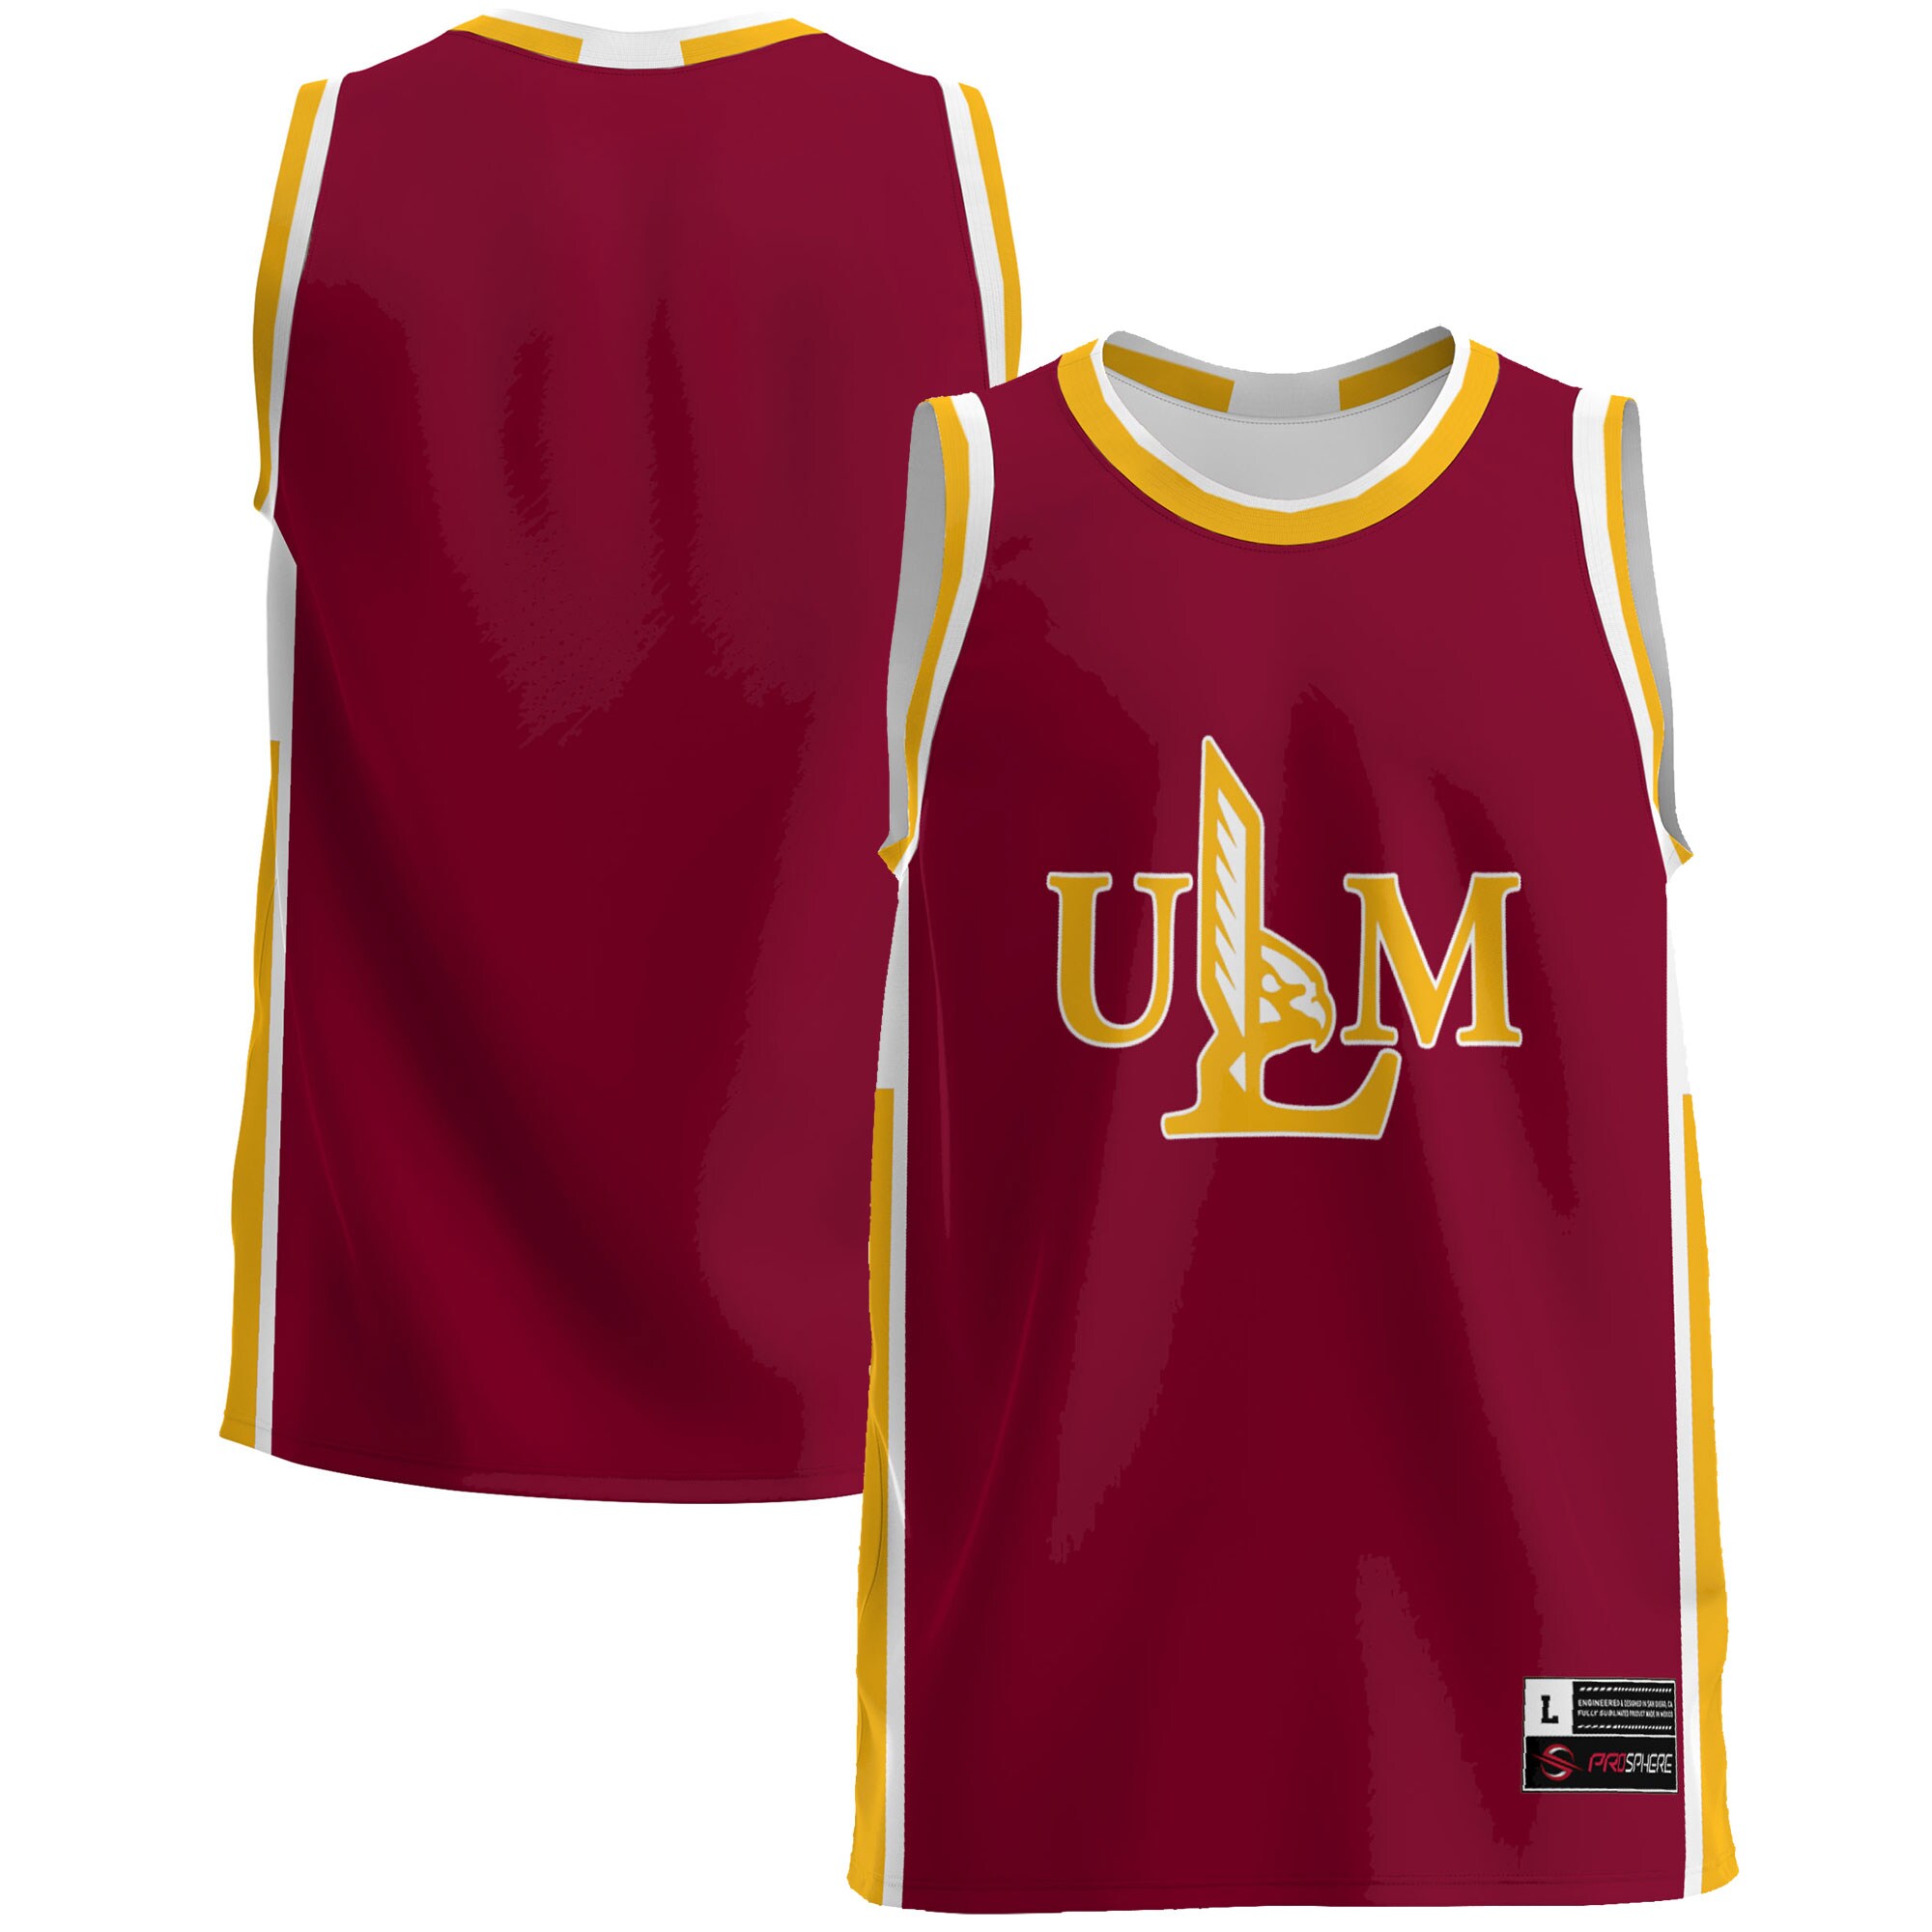 Ulm Warhawks Basketball Jersey - Maroon For Youth Women Men